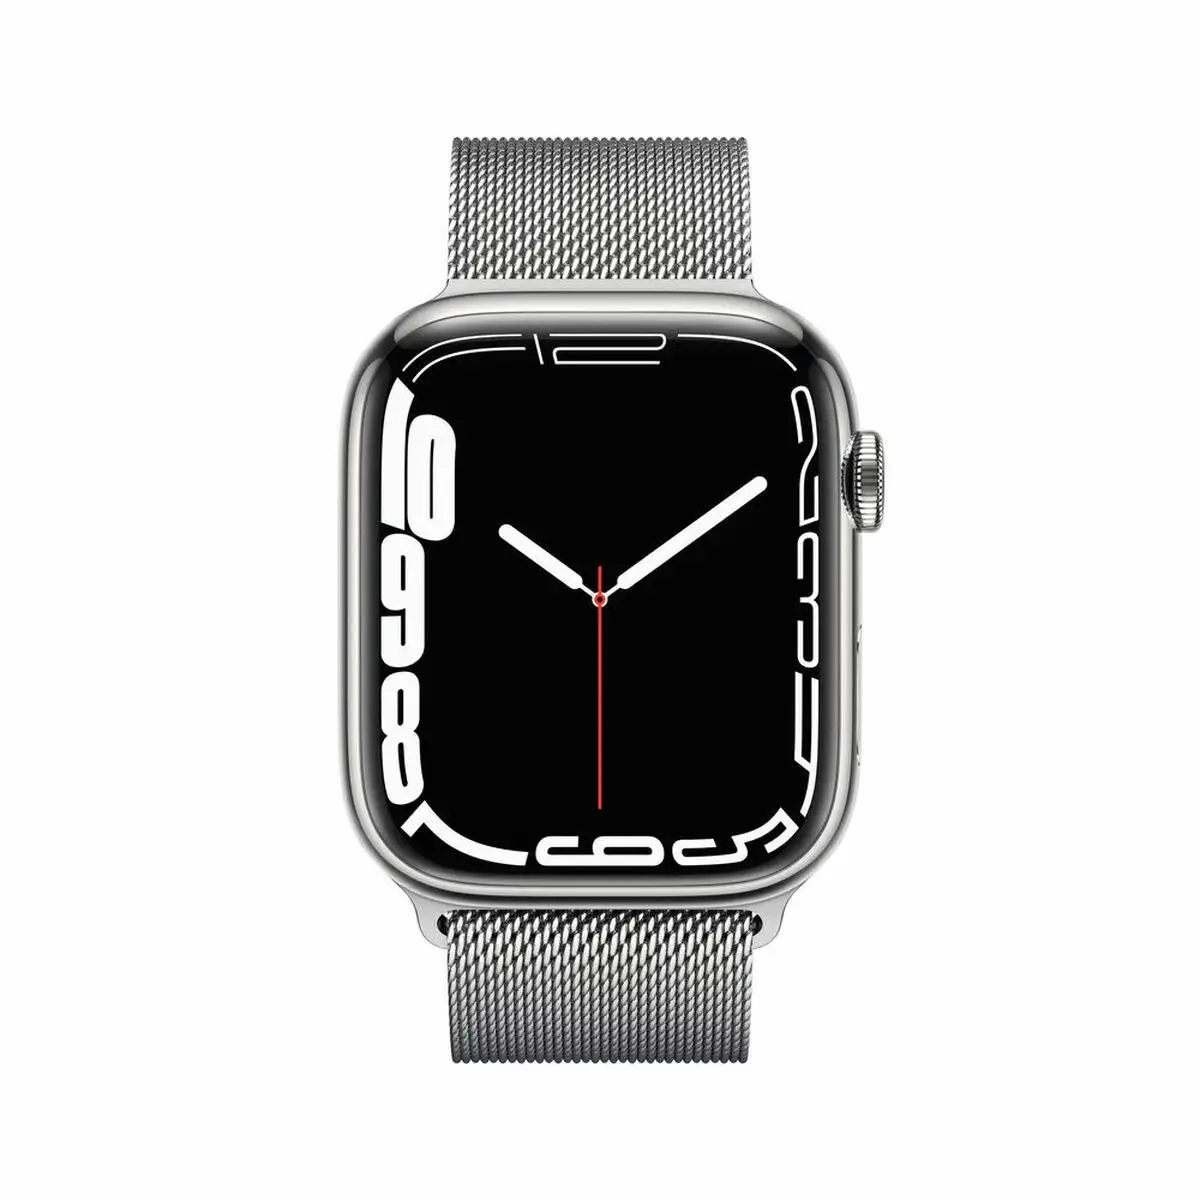 Montre intelligente apple watch series 7 argent 32 gb oled lte_5904. DIAYTAR SENEGAL - Où Choisir Devient une Expression de Soi. Découvrez notre boutique en ligne et trouvez des articles qui révèlent votre personnalité et votre style.